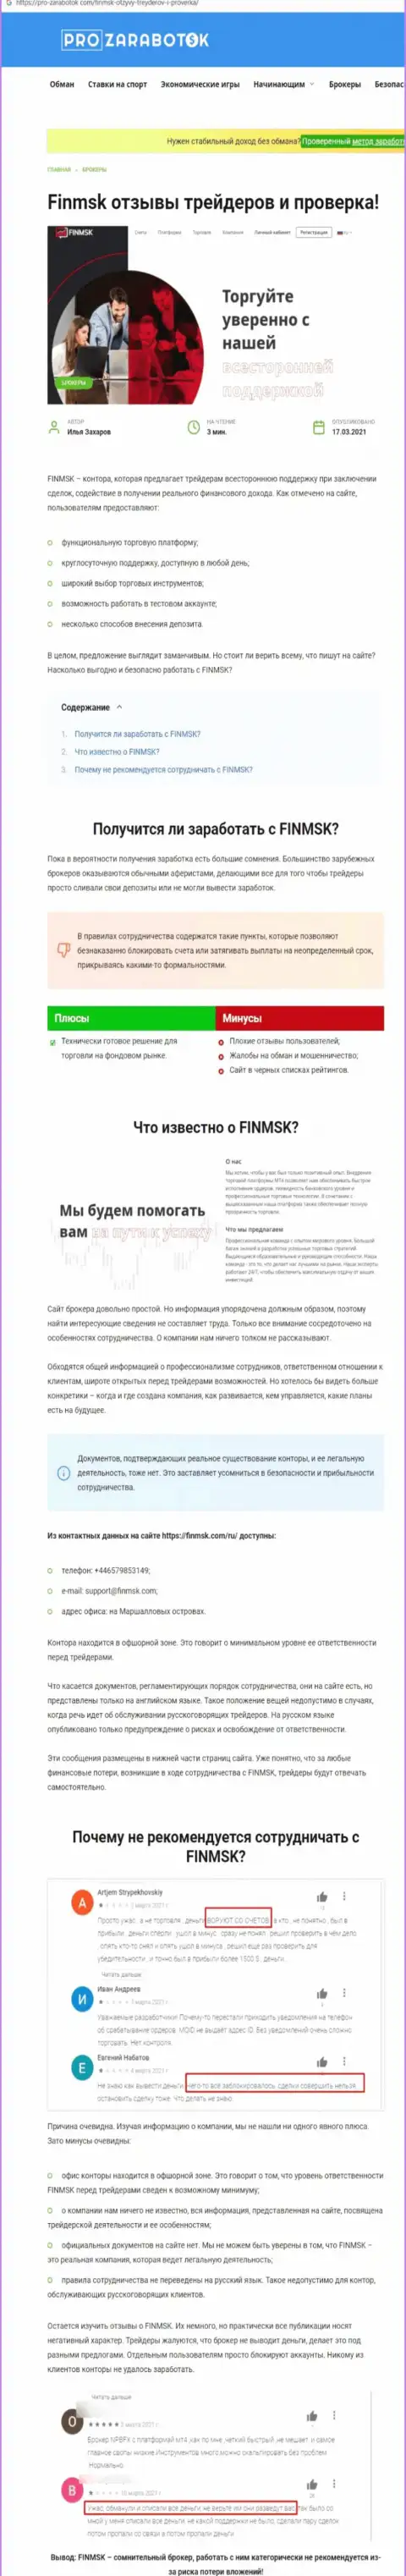 Чем заканчивается взаимодействие с FinMSK ? Публикация об интернет-разводиле